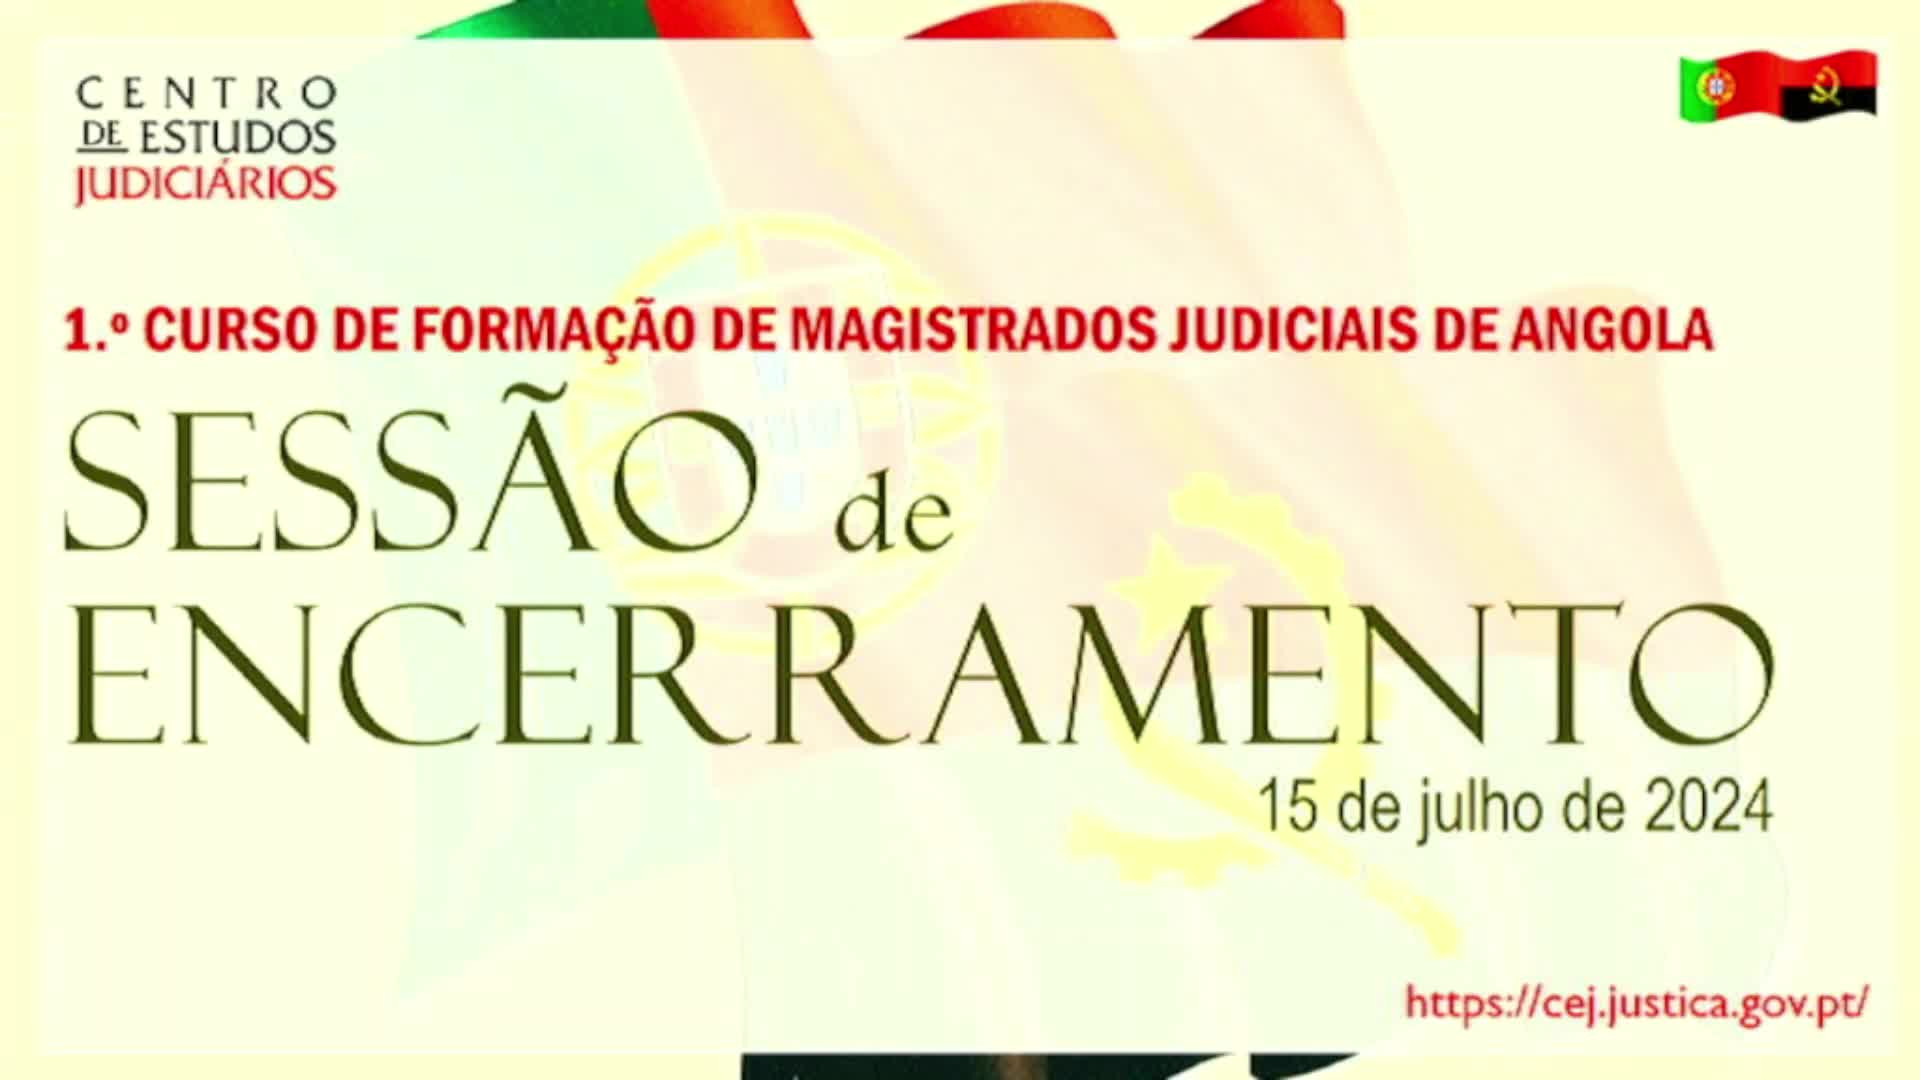   Sessão de Encerramento do 1º Curso de Formação de Magistrados Judiciais de Angola [15.jul.2024]